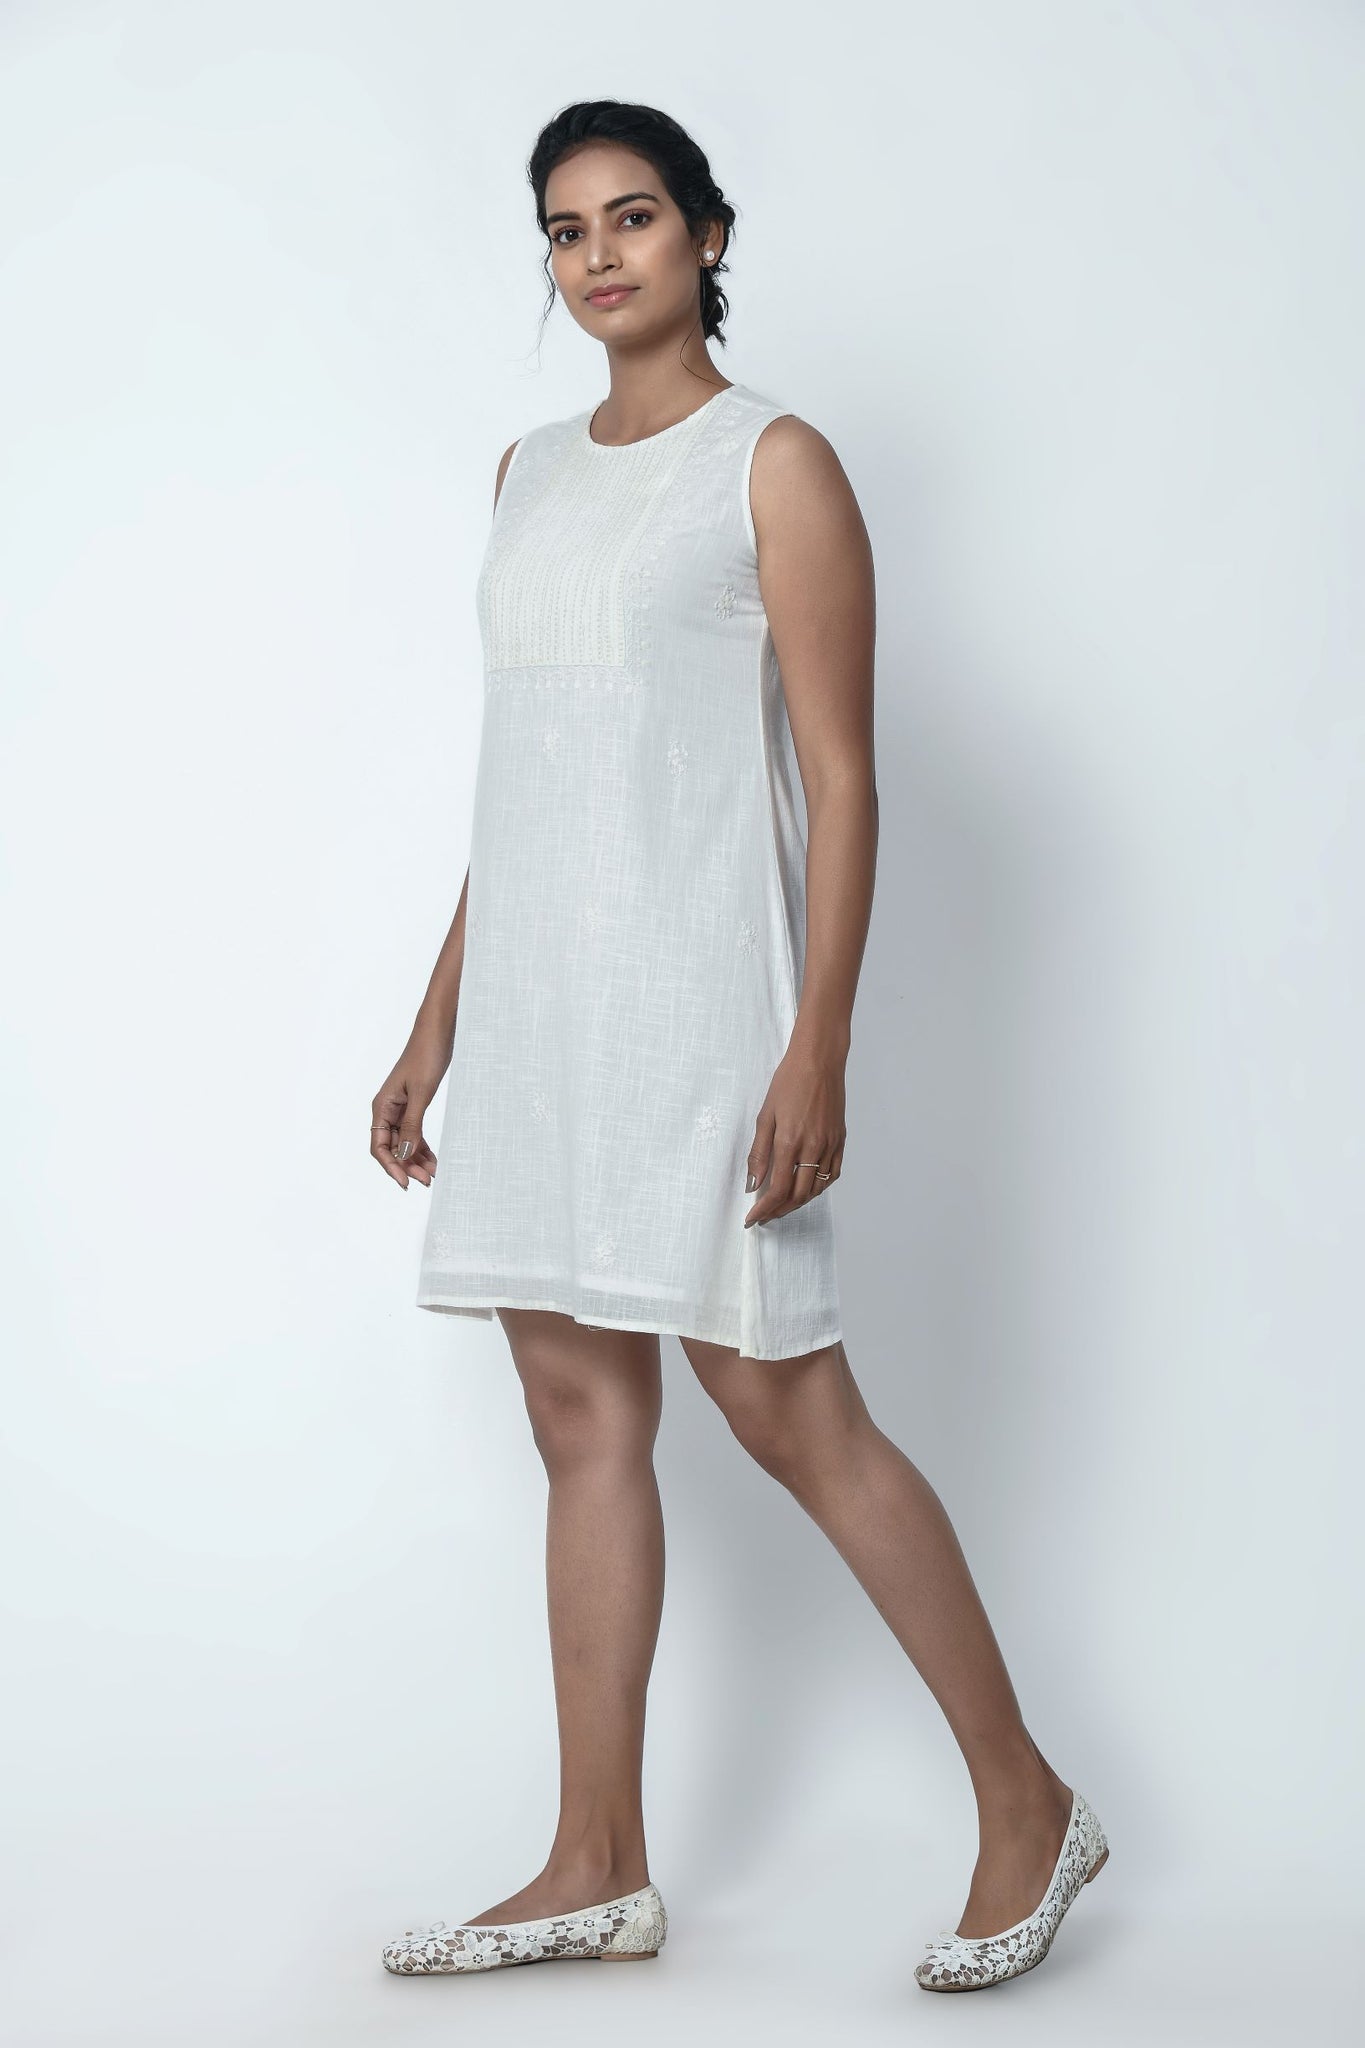 Phagun Ivory White Sleeveless Dress With Chikankari Embroidery